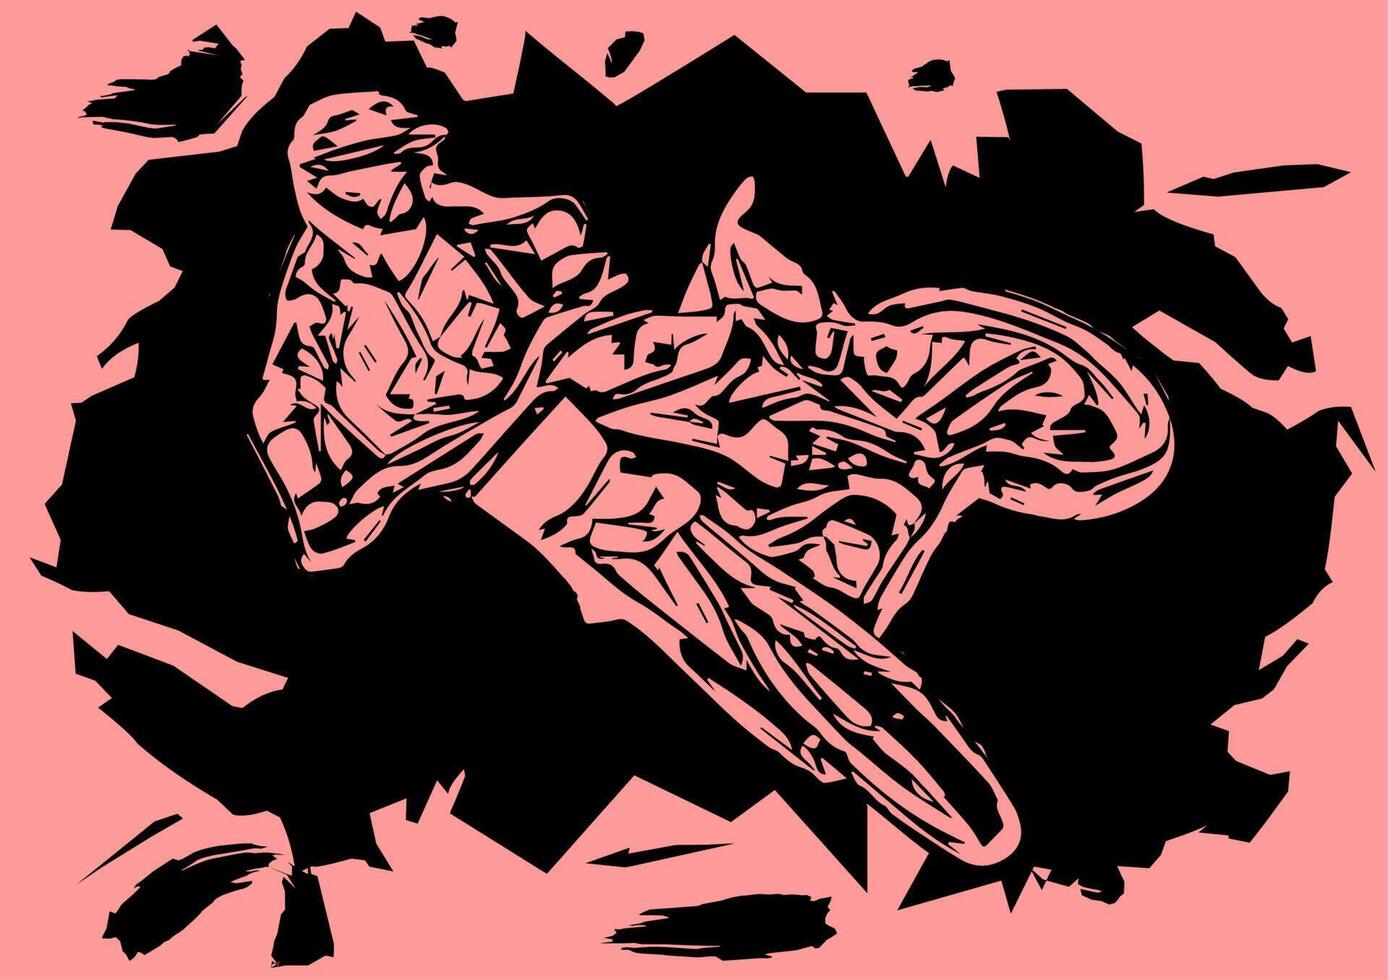 Motocross-Sprung-Silhouette-Vektor vektor